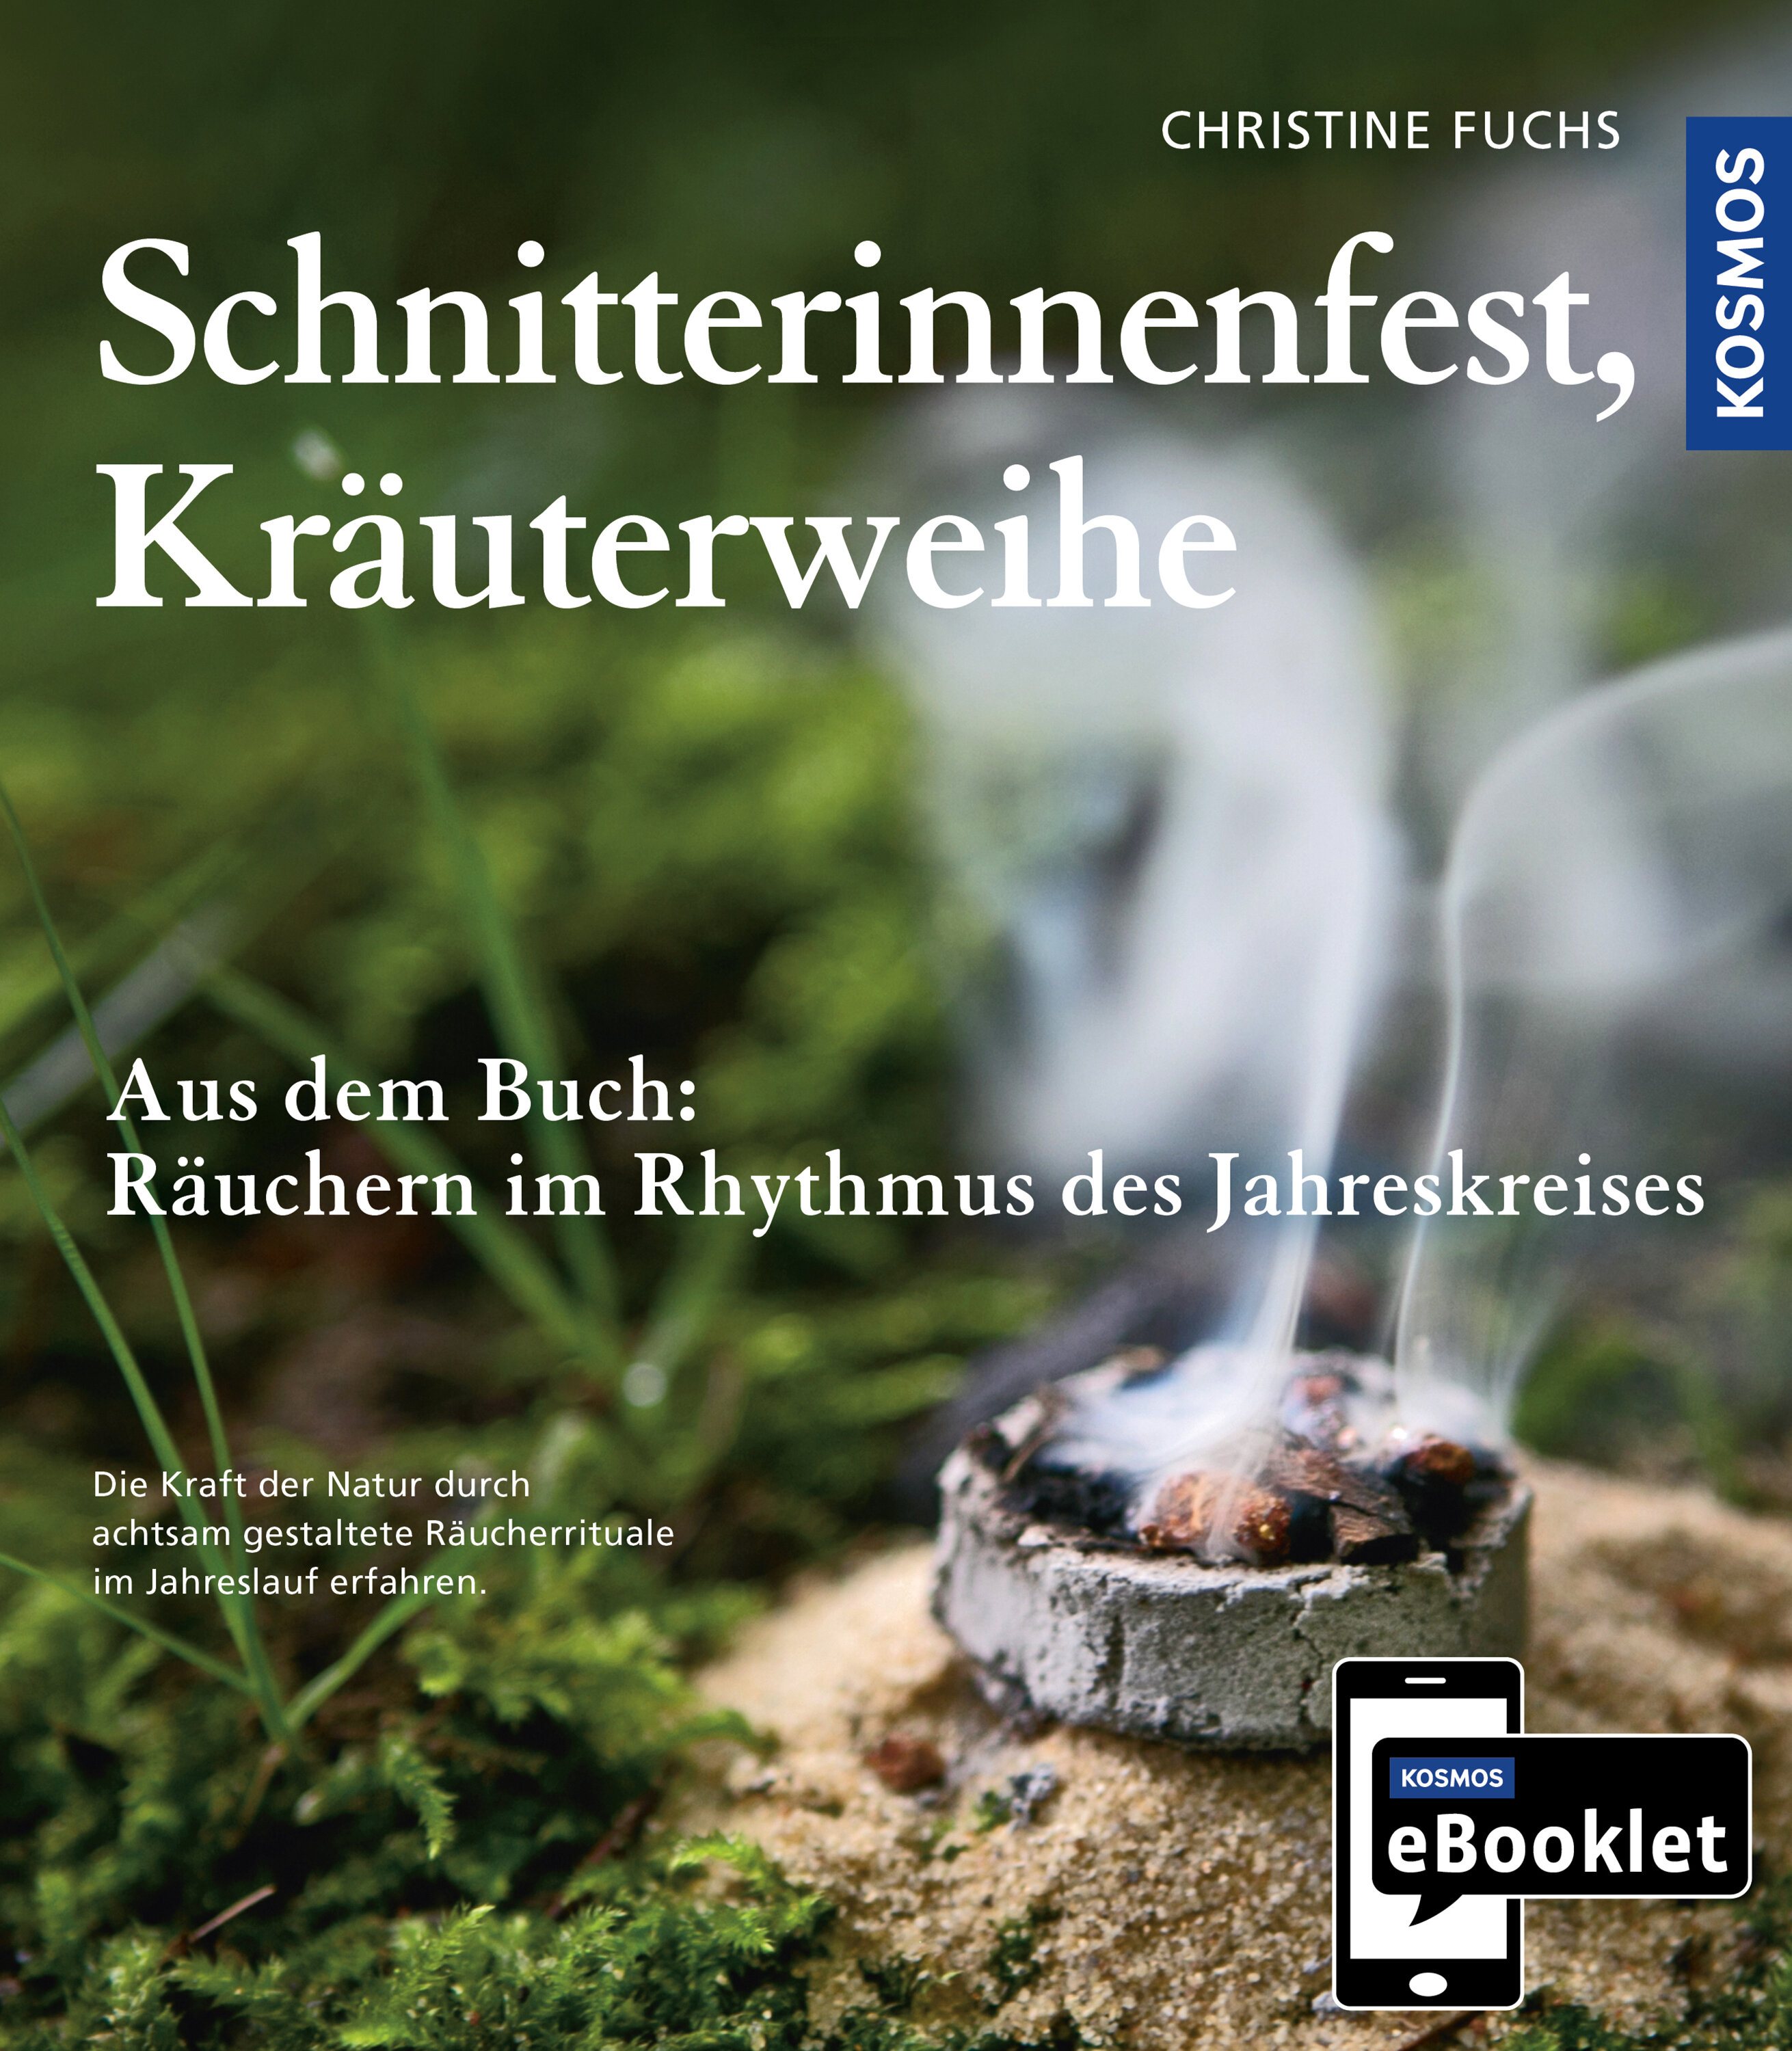 KOSMOS eBooklet: Schnitterinnenfest  Kräuterweihe